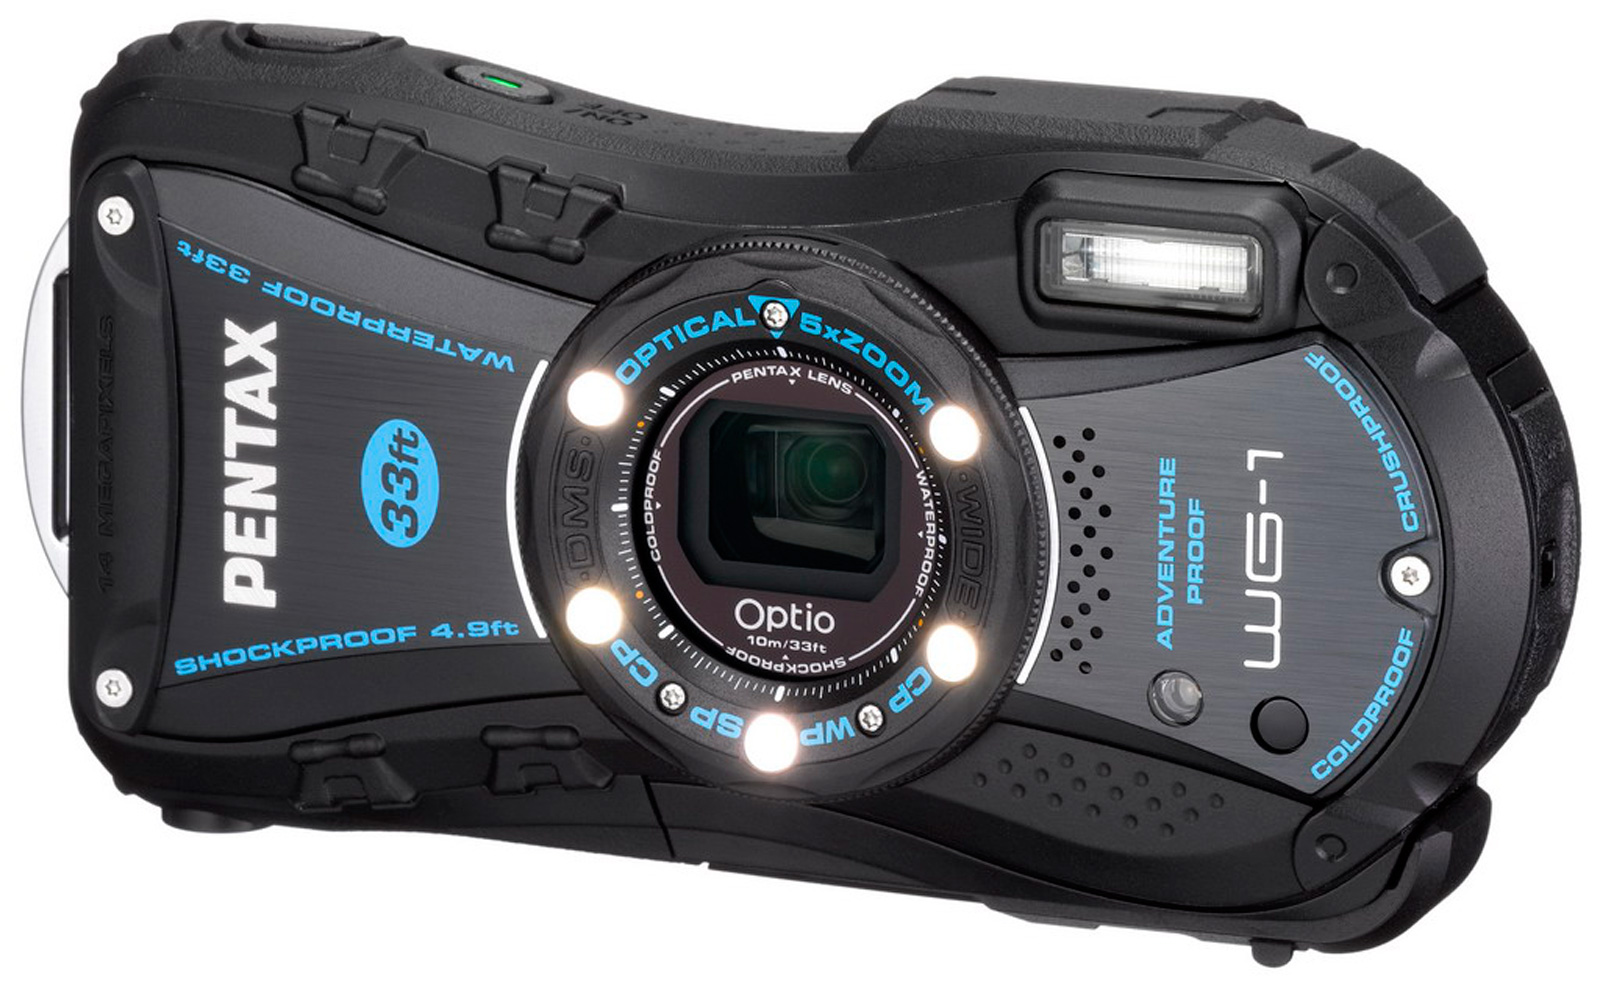 Pentax Optio WG-1 GPS Digital Camera Review